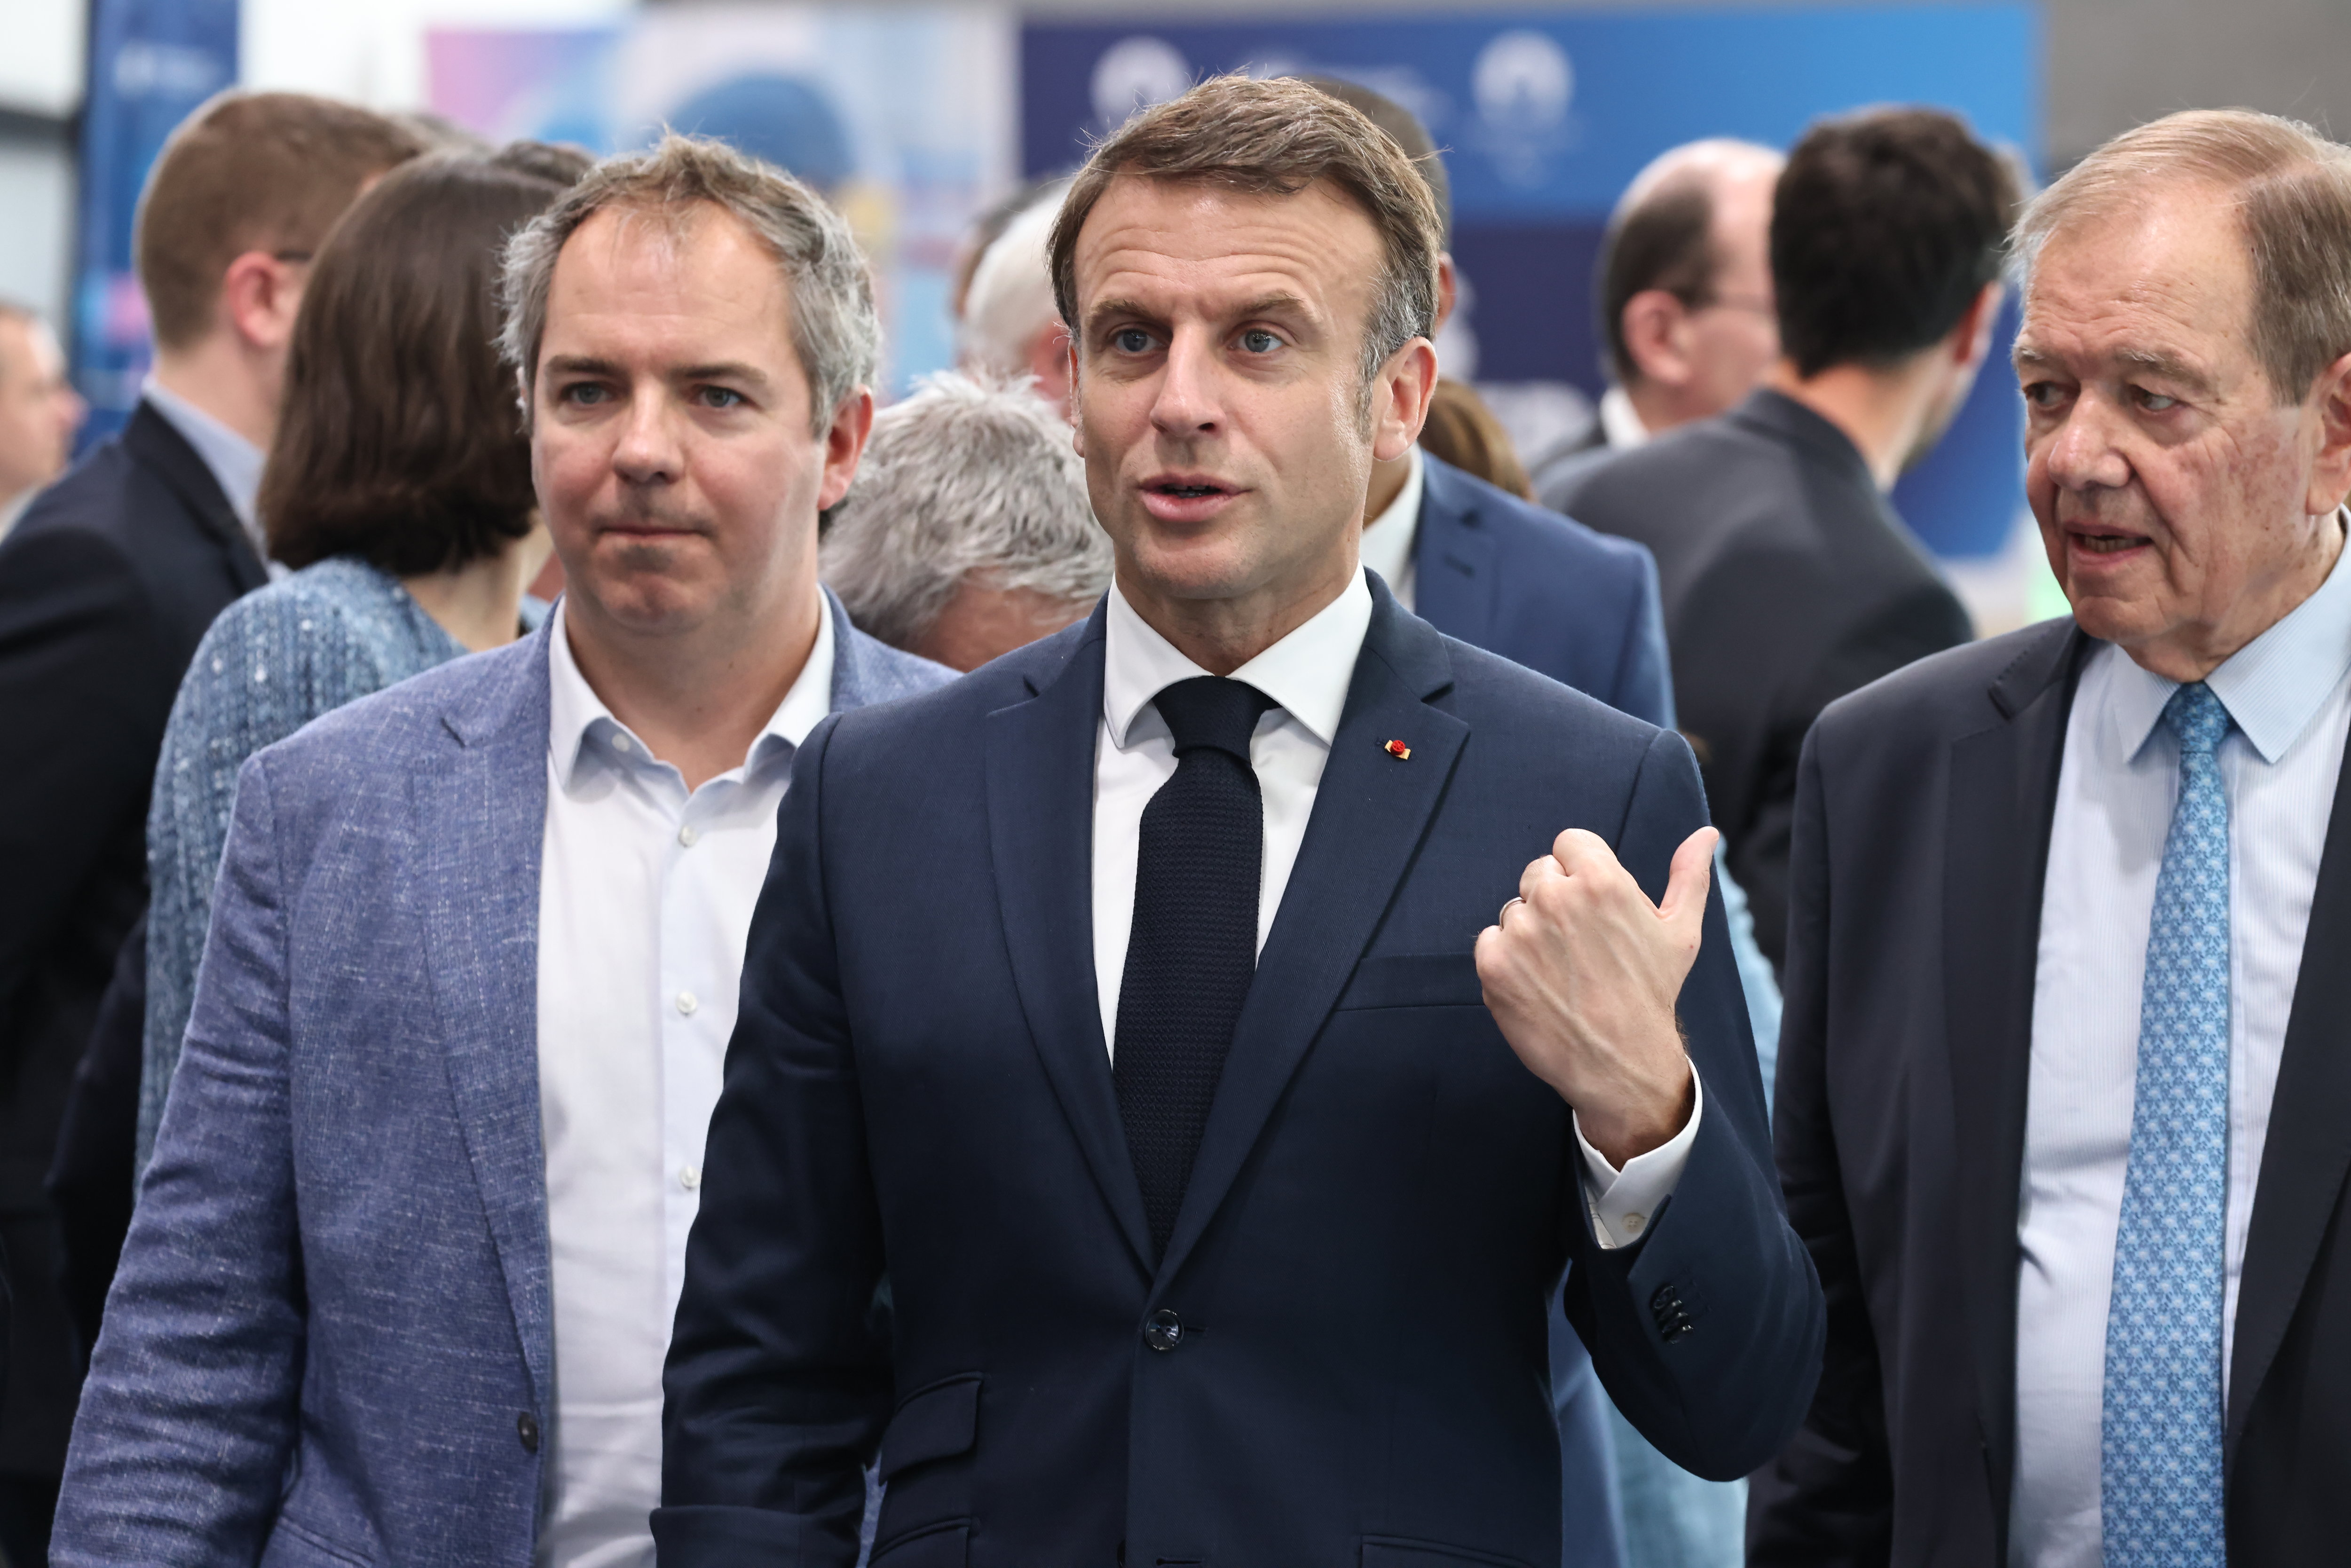 Le président Emmanuel Macron a évoqué les propos "menaçants" de la Russie, et a affirmé n'avoir "aucun doute" sur un ciblage malveillant de l'information autour des JO par le Kremlin. LP / Fred Dugit